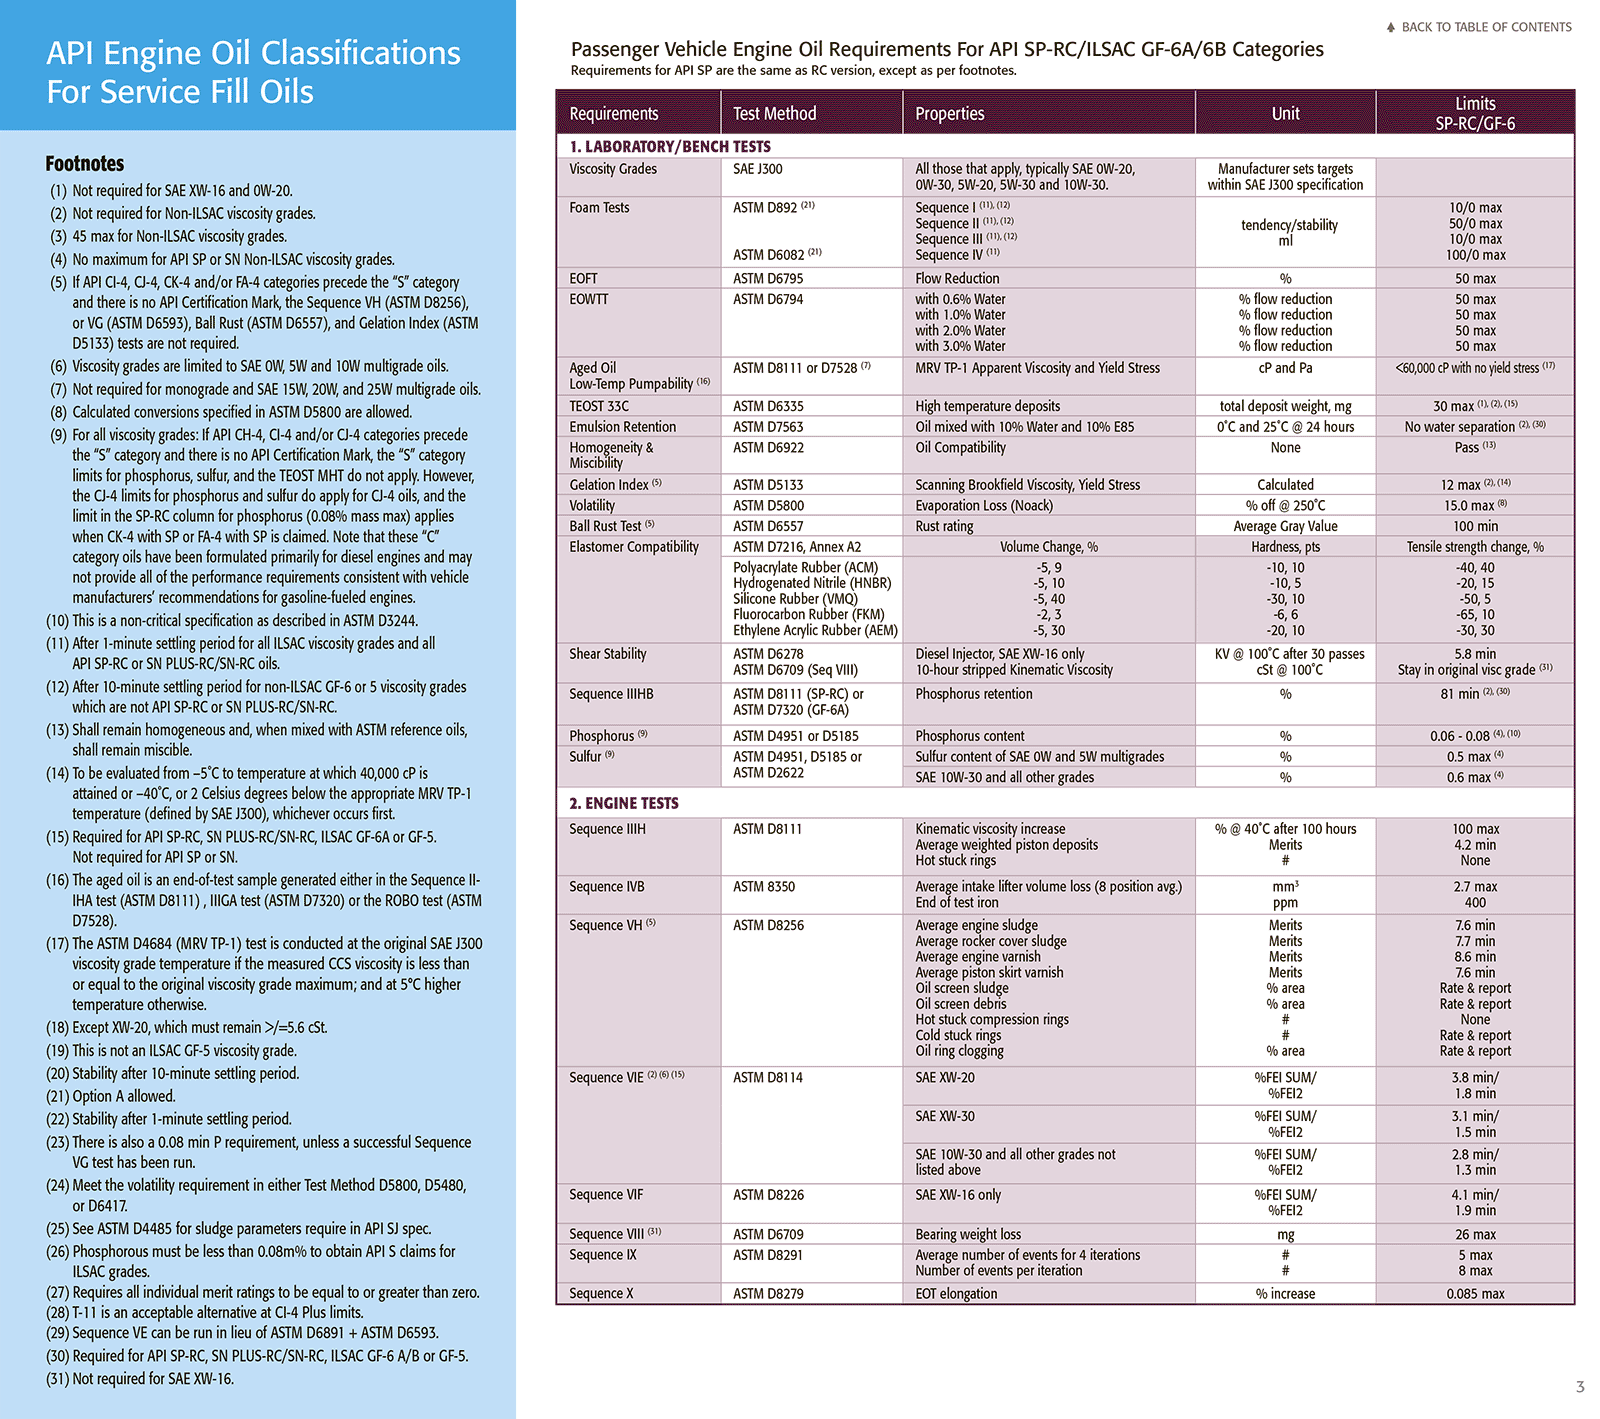 api-engine-oil-classifications-brochure 2021-4 копия.gif